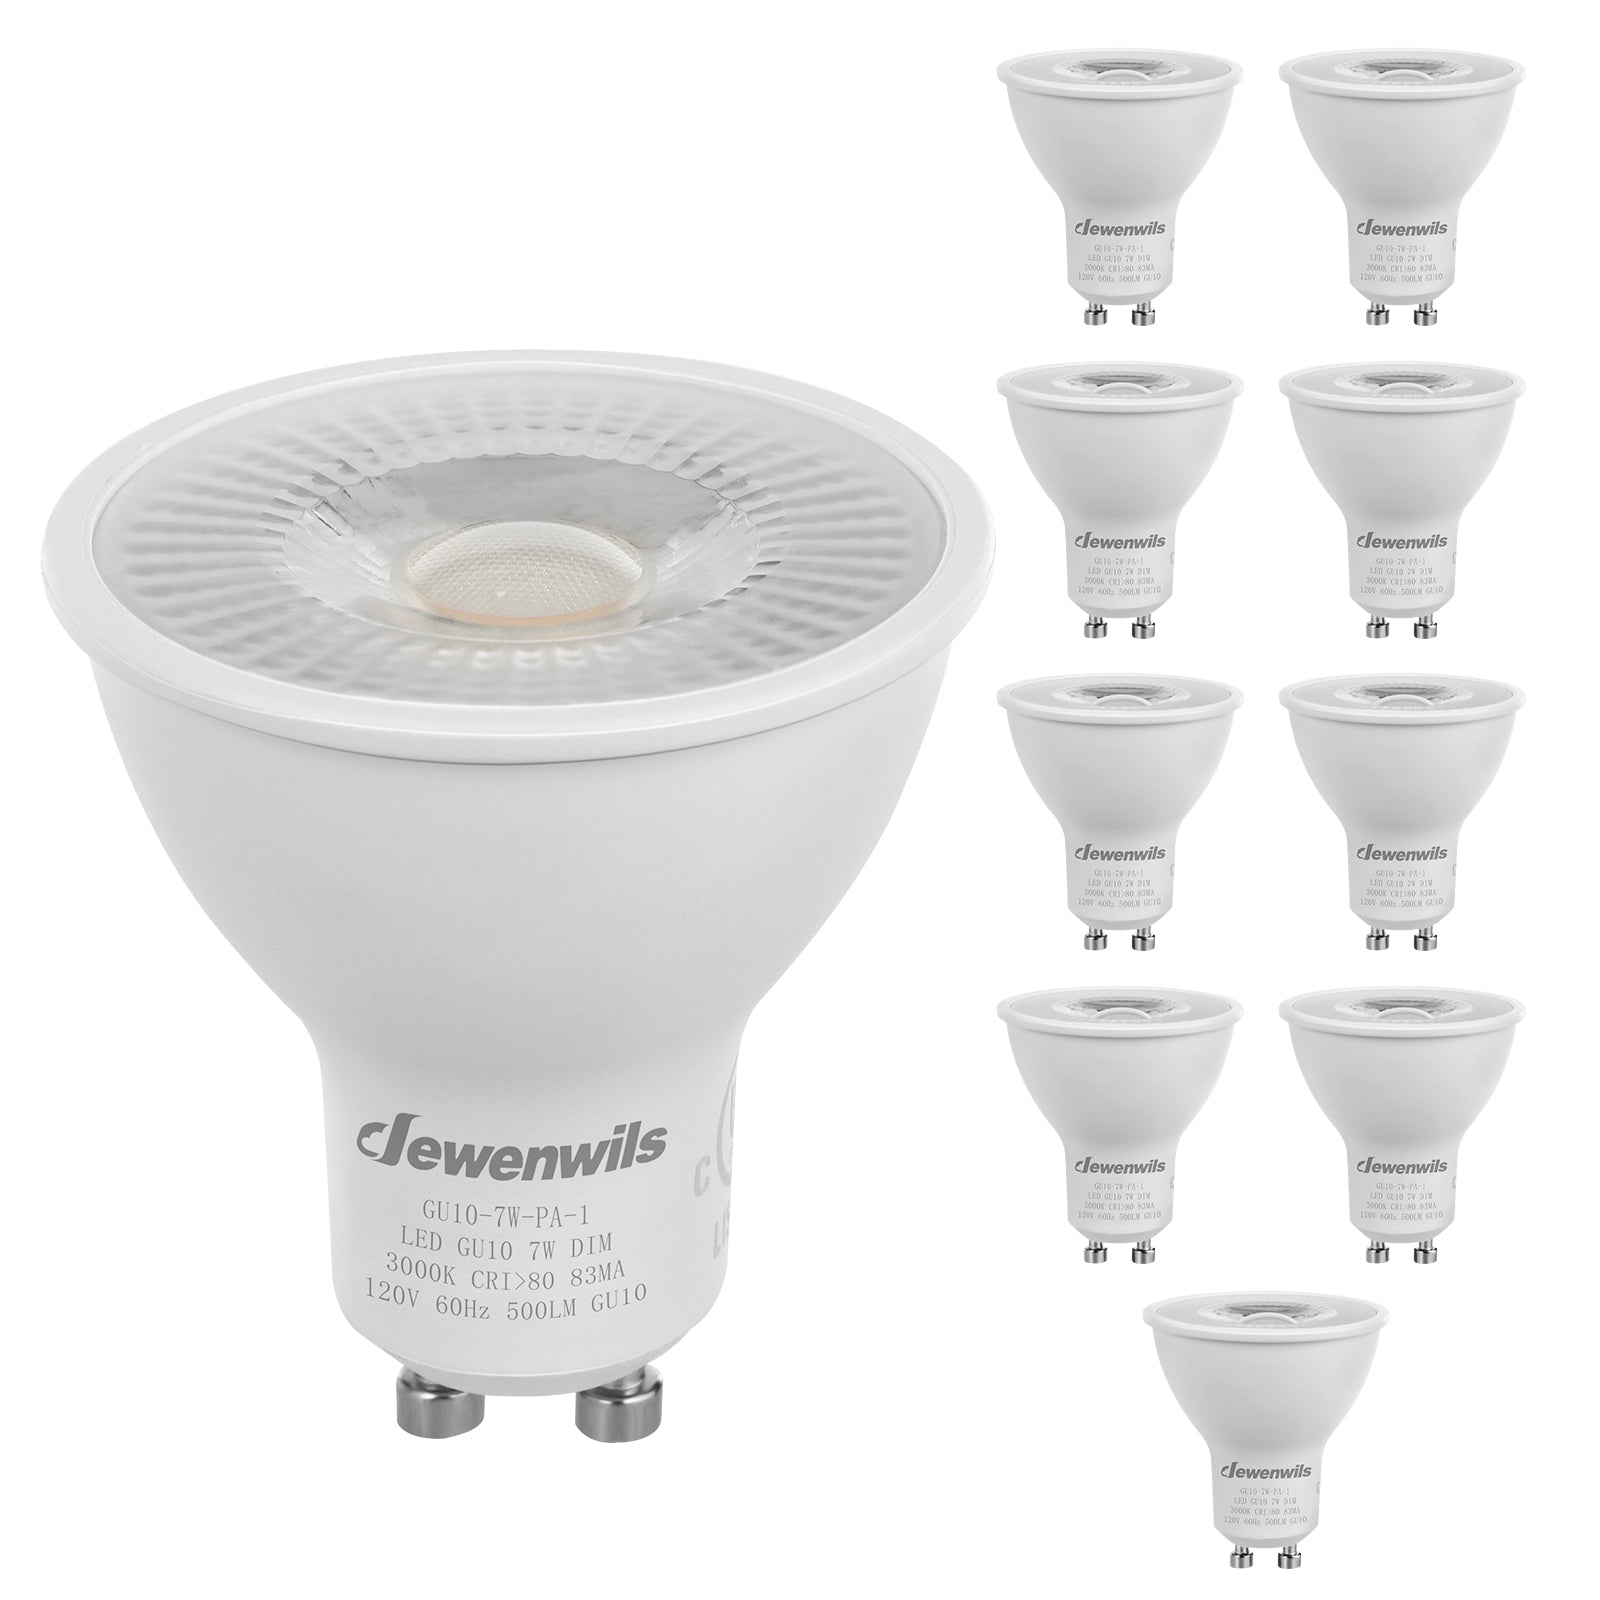 LUXEN Ampoule spot LED PAR16 7,5W substitut 70W 575 lumens blanc neutre  3000K GU10